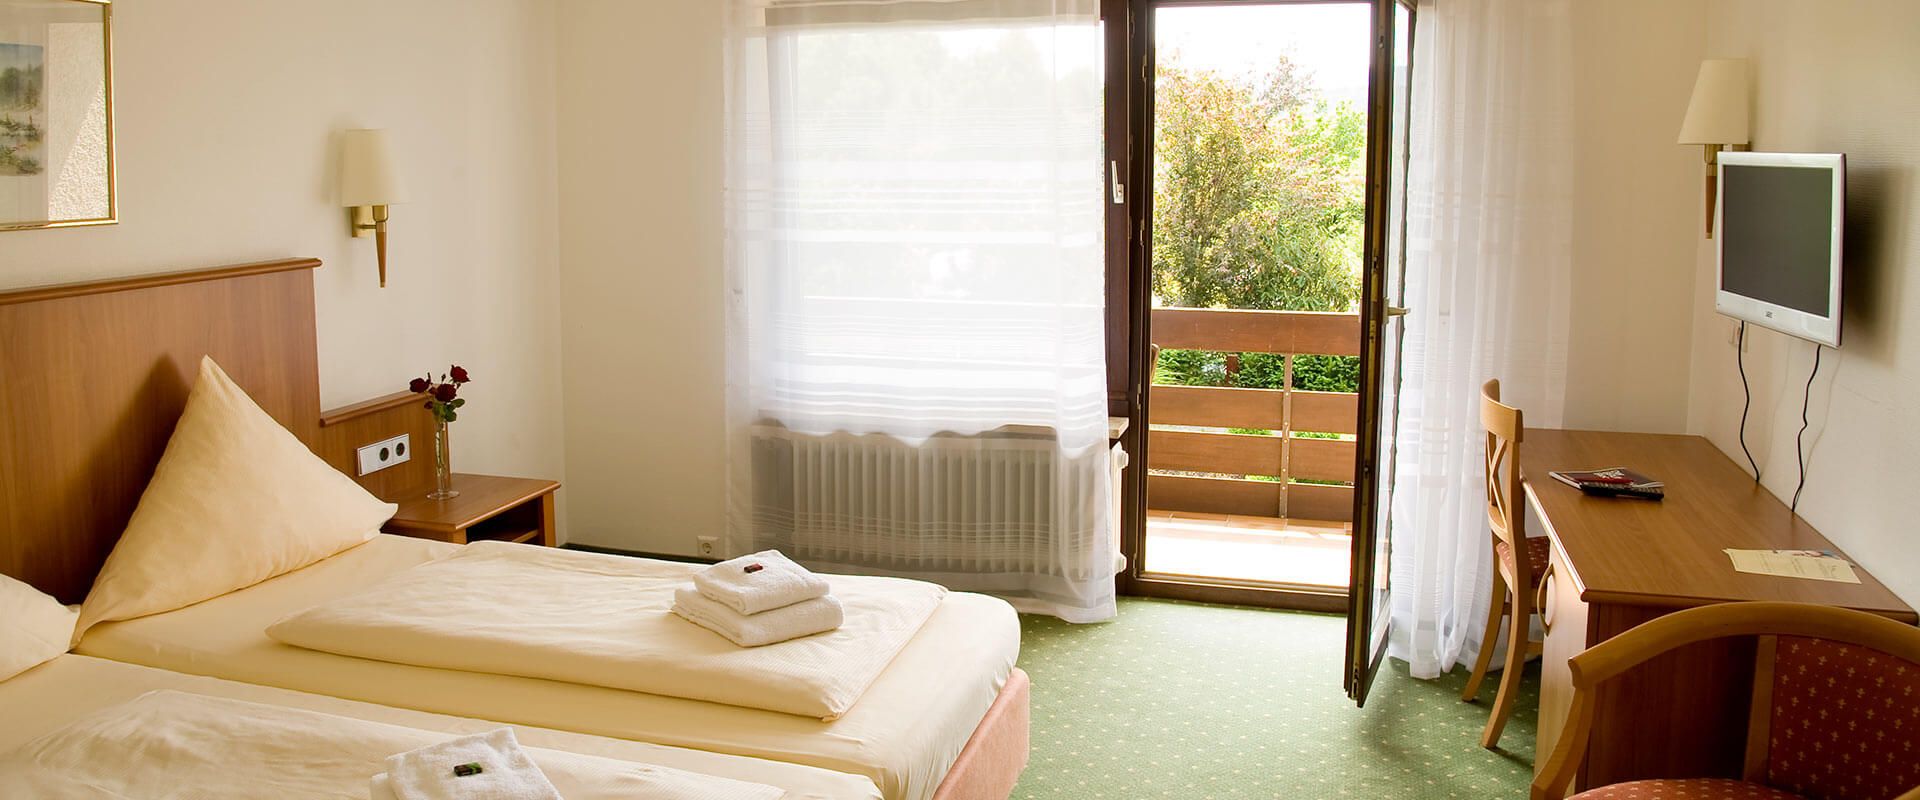 Doppelzimmer mit Balkon im Aqualon Hotel Schweizerblick